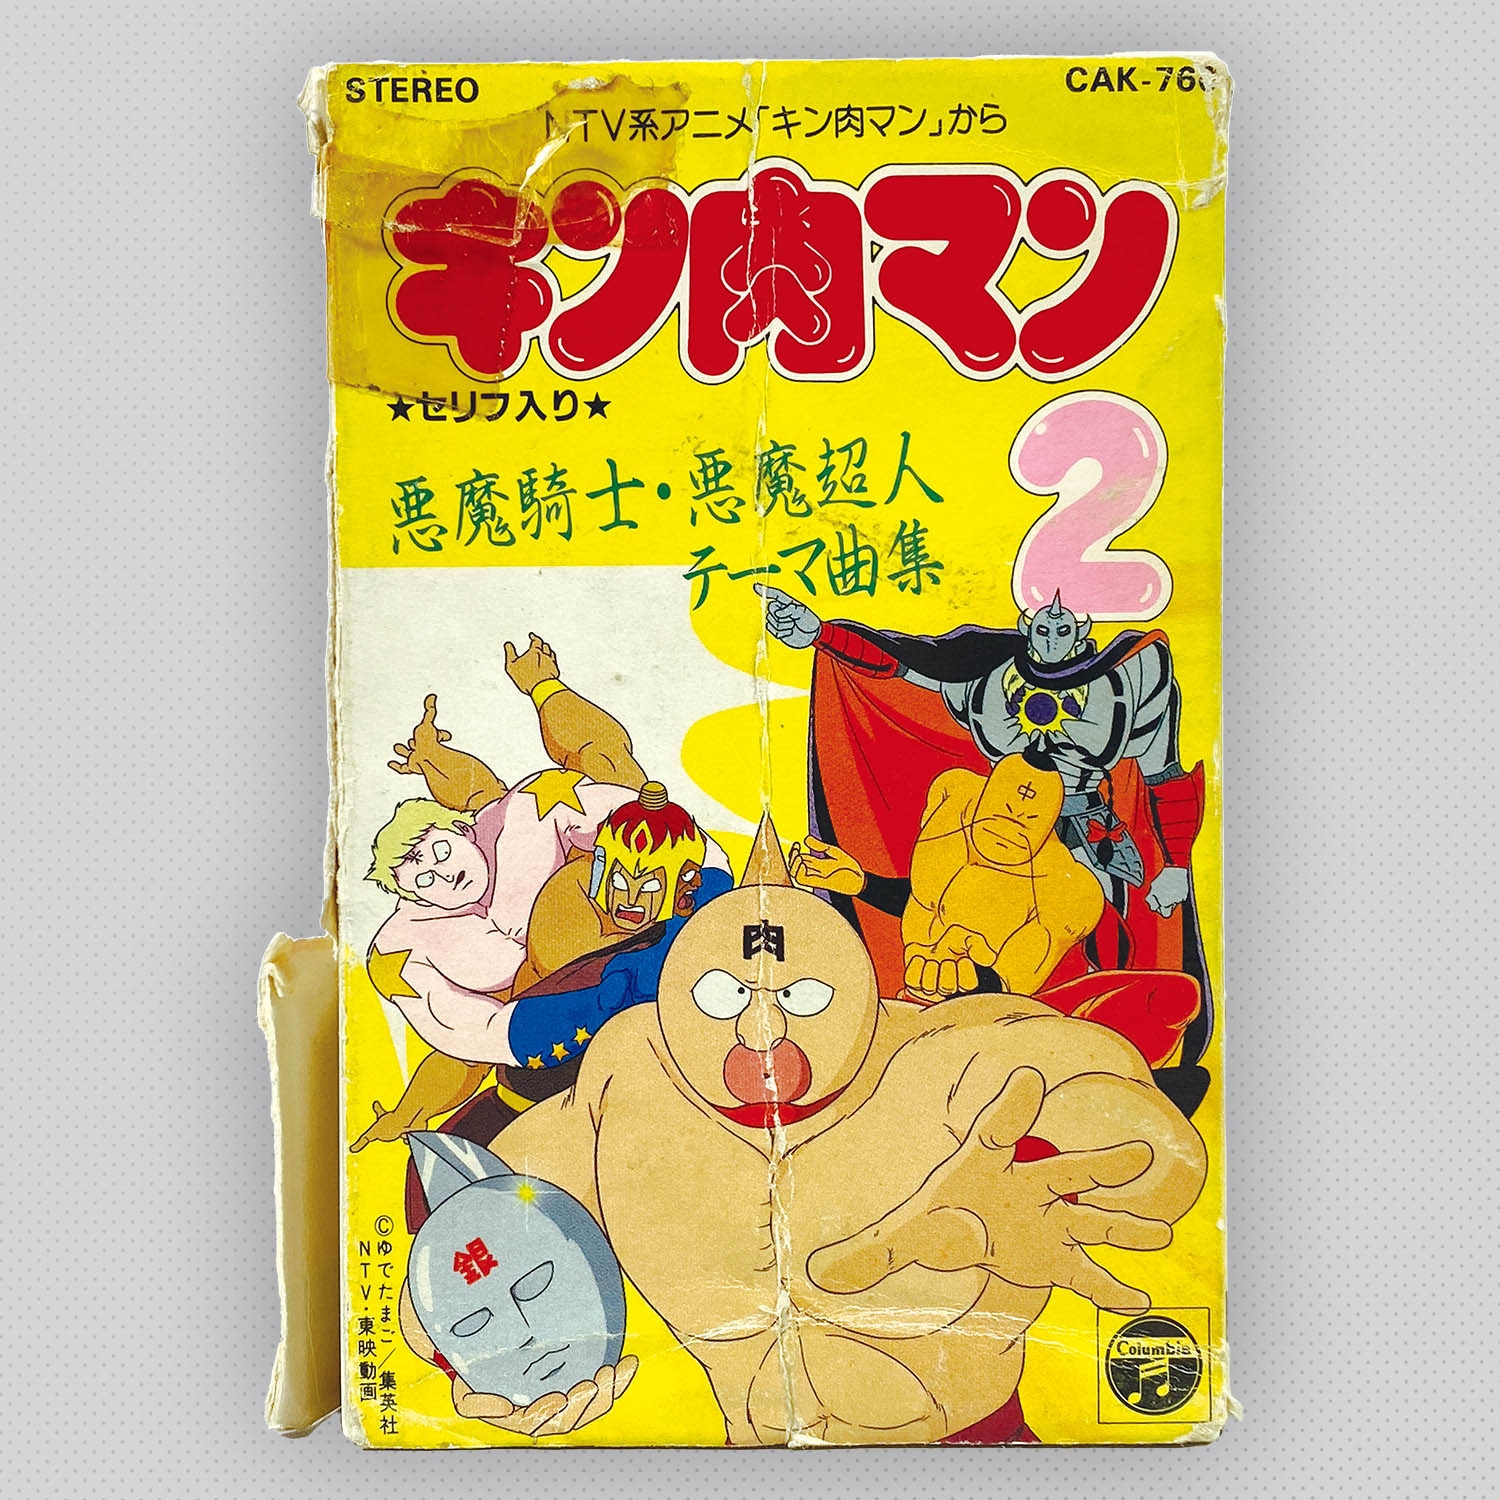 日本で買† 激レア 希少 キン肉マンのザ・ヒット・パレード 超人の歌ベスト20 カセットテープ 音 CAK-798 昭和レトロ 80年代 当時物 ビンテージ キン肉マン